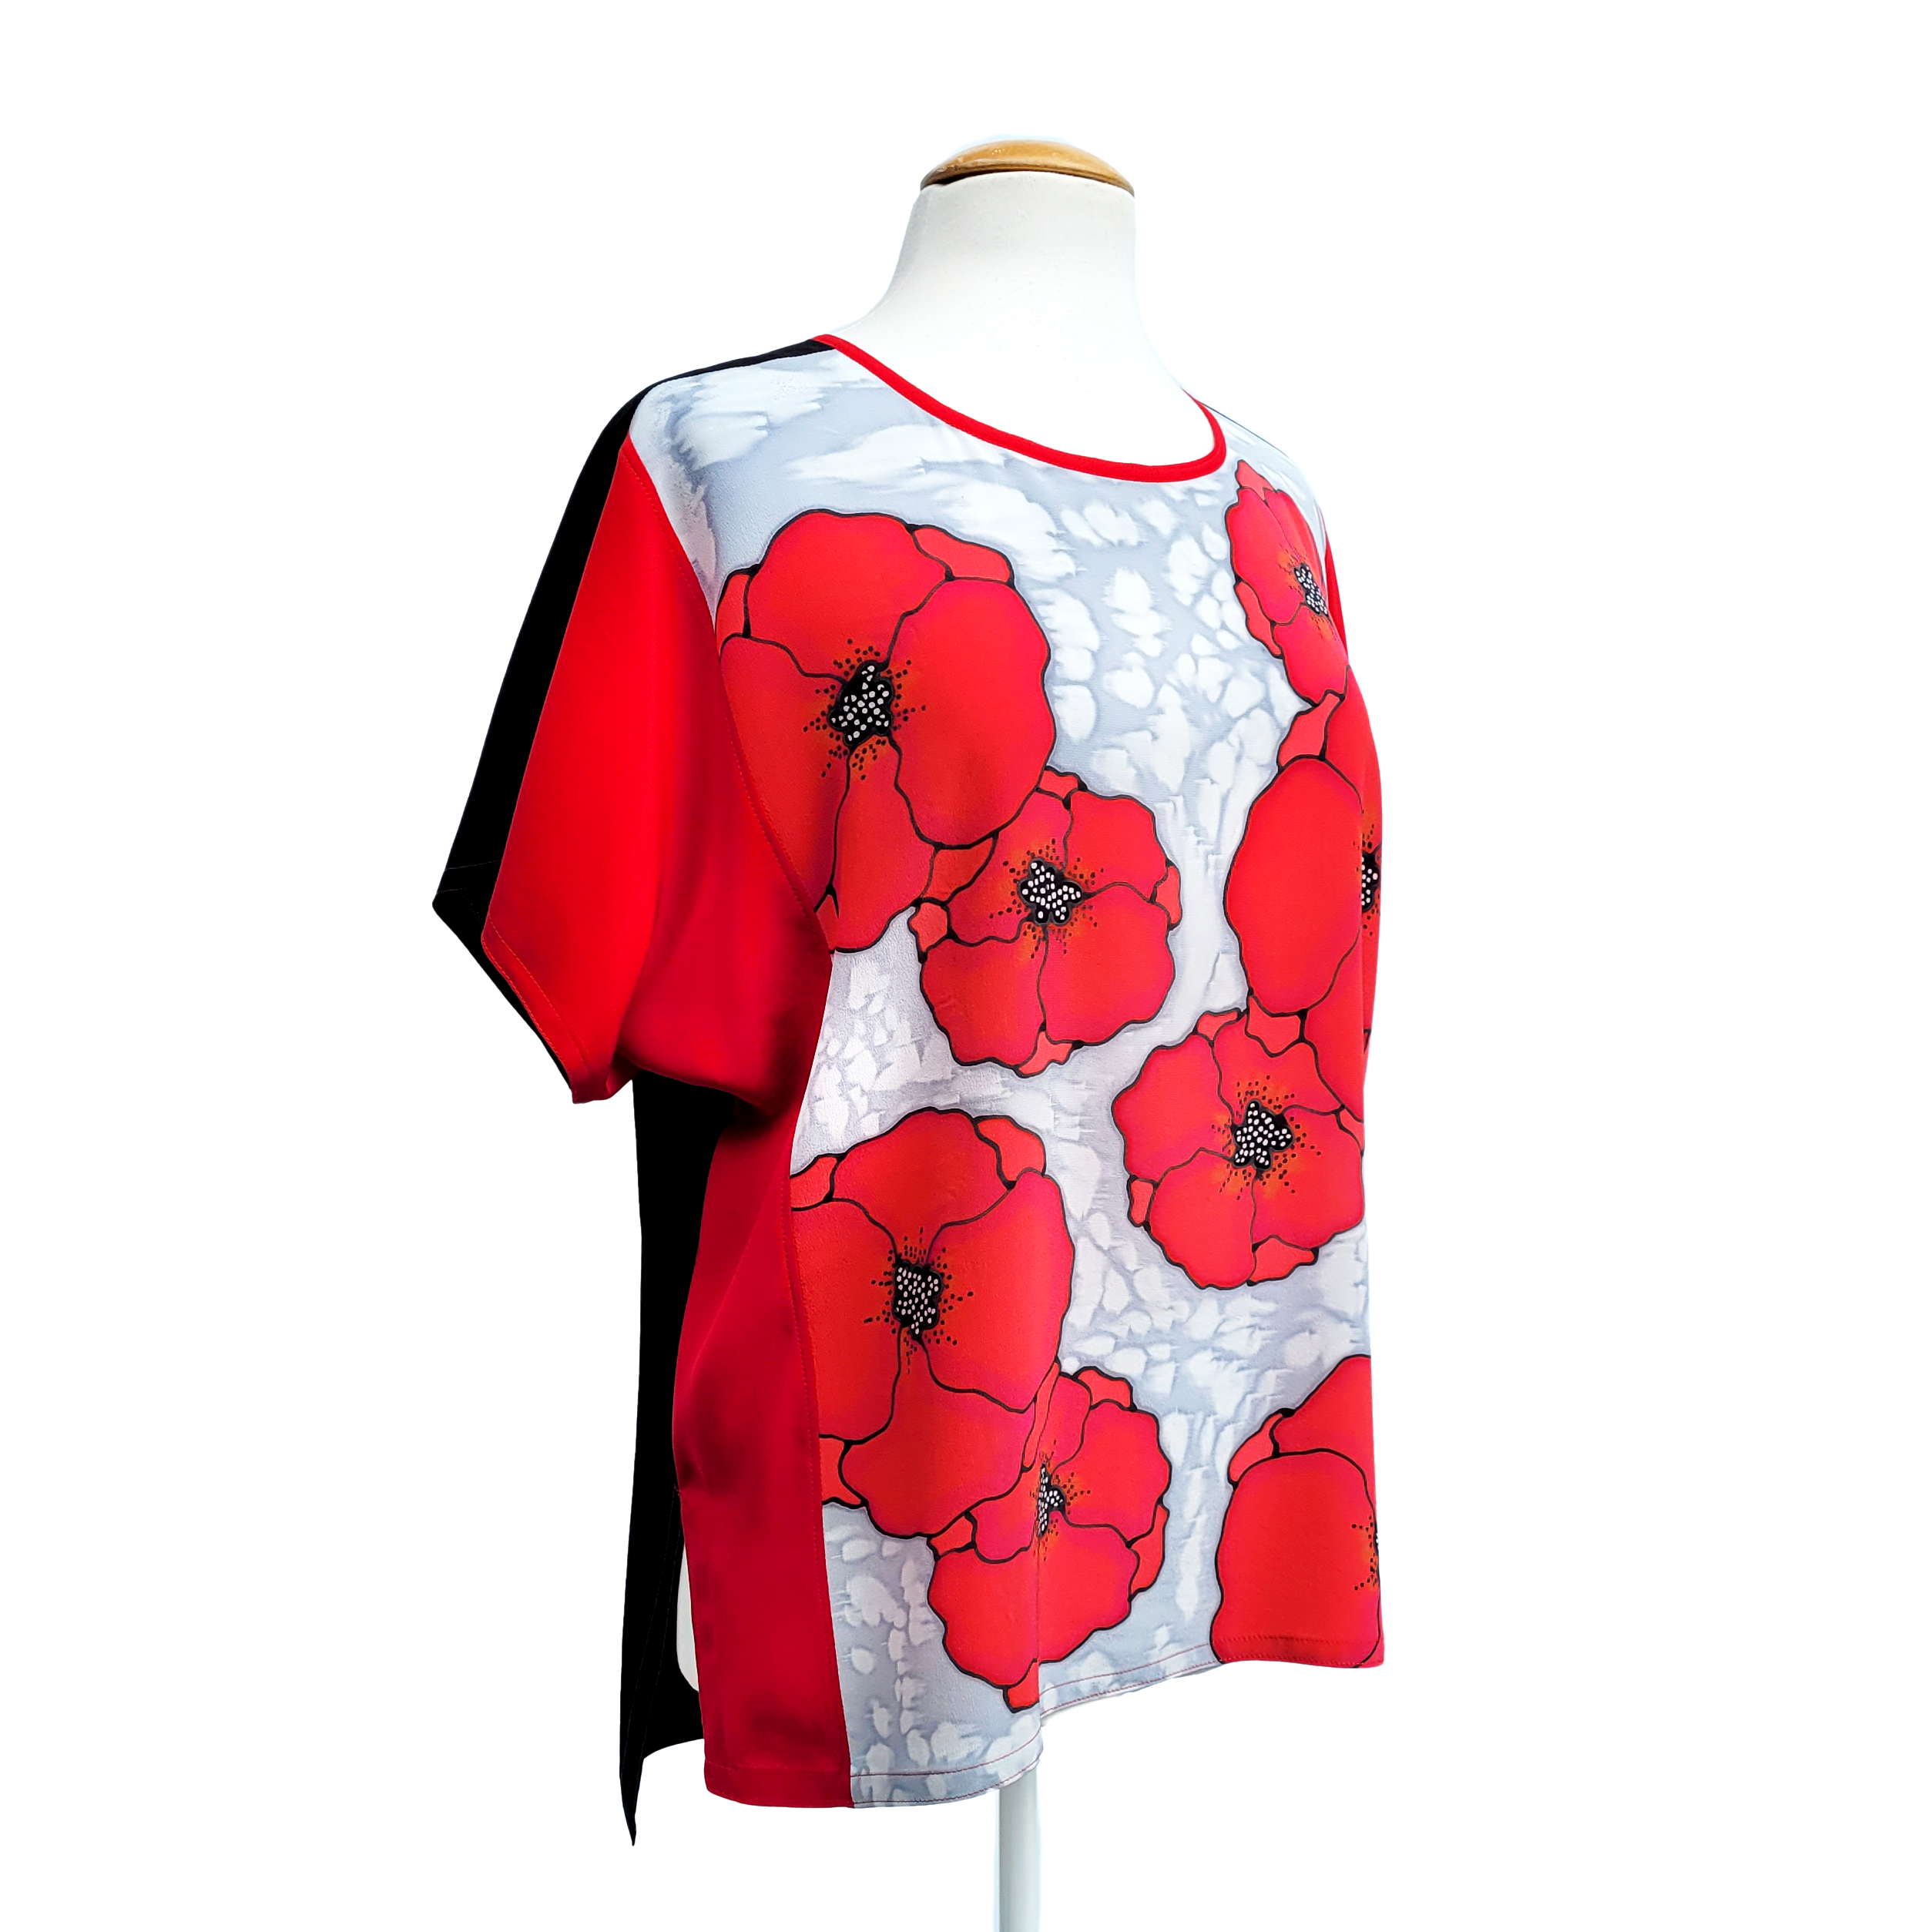 ladies t-top ladies short sleeve blouse hand painted red poppy art handmade by Lynne Kiel